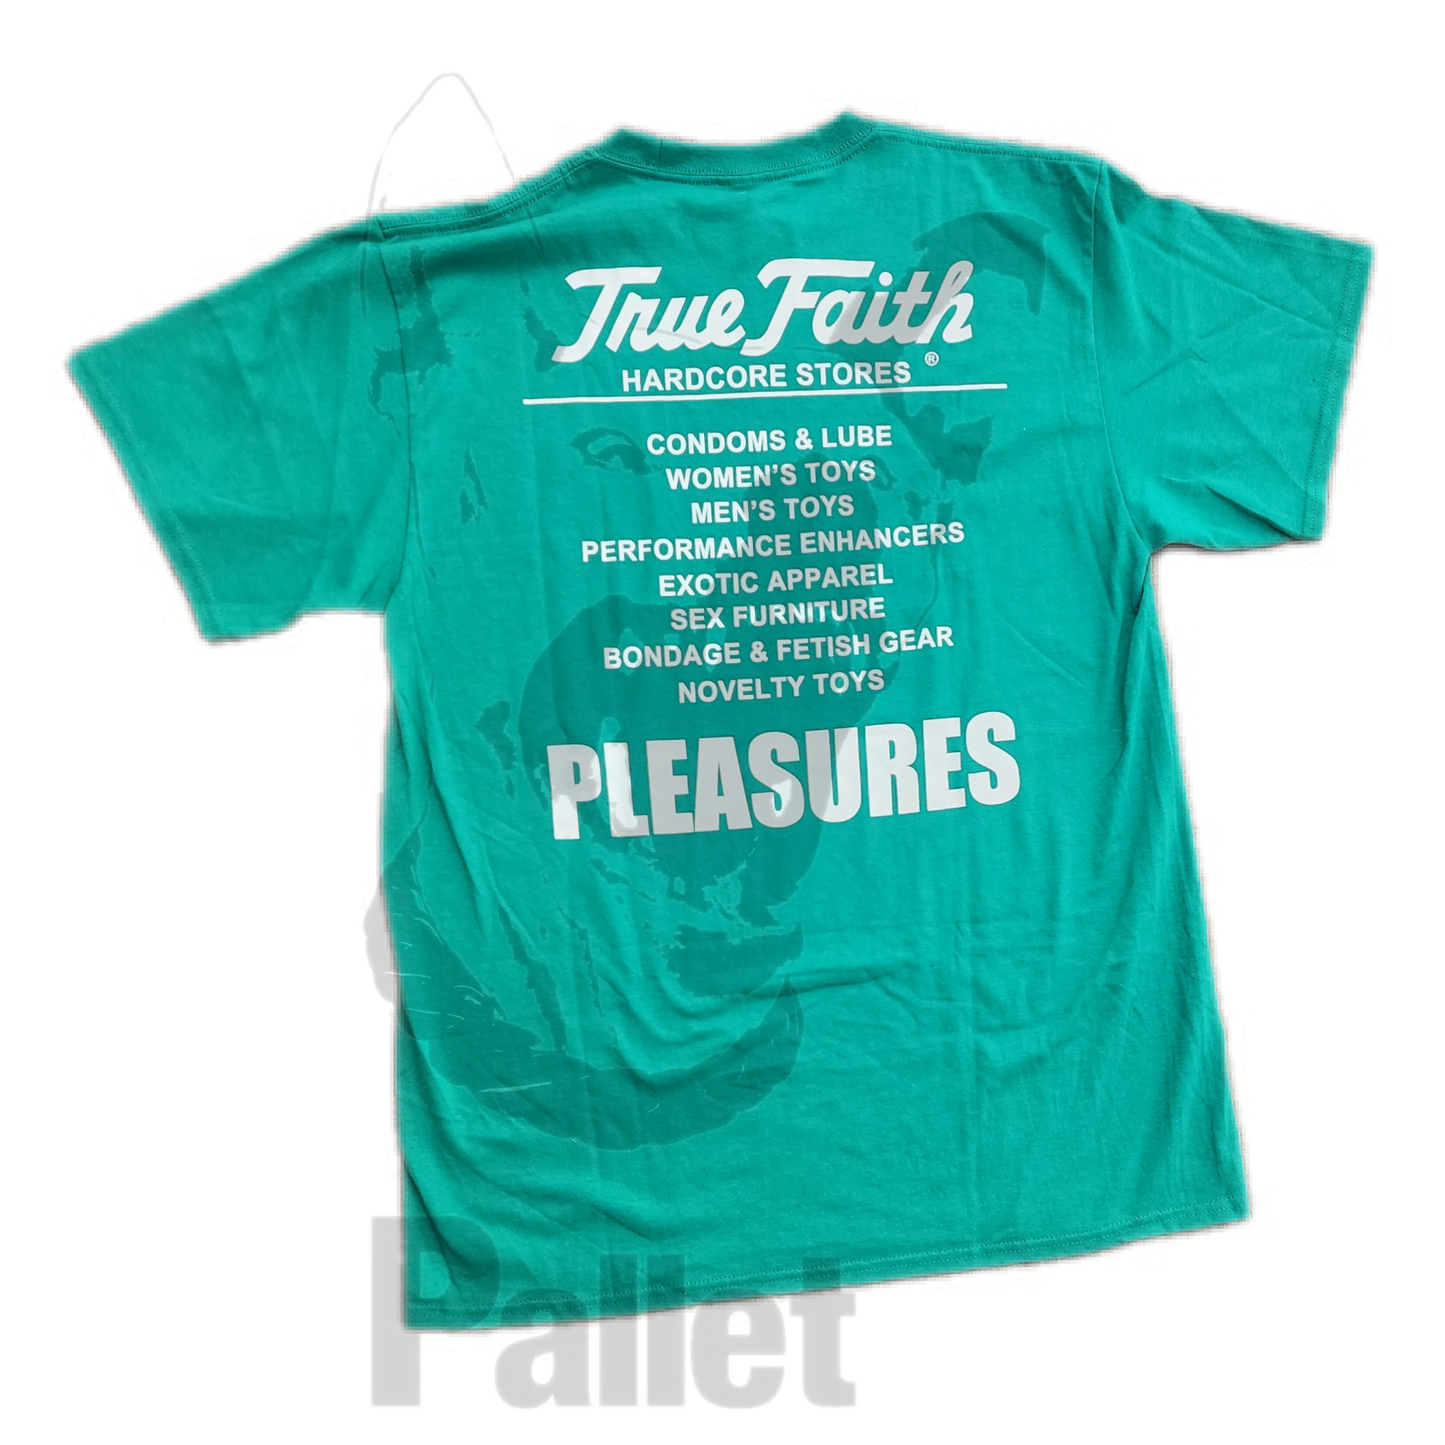 Pleasures - "Faith Green Tee"